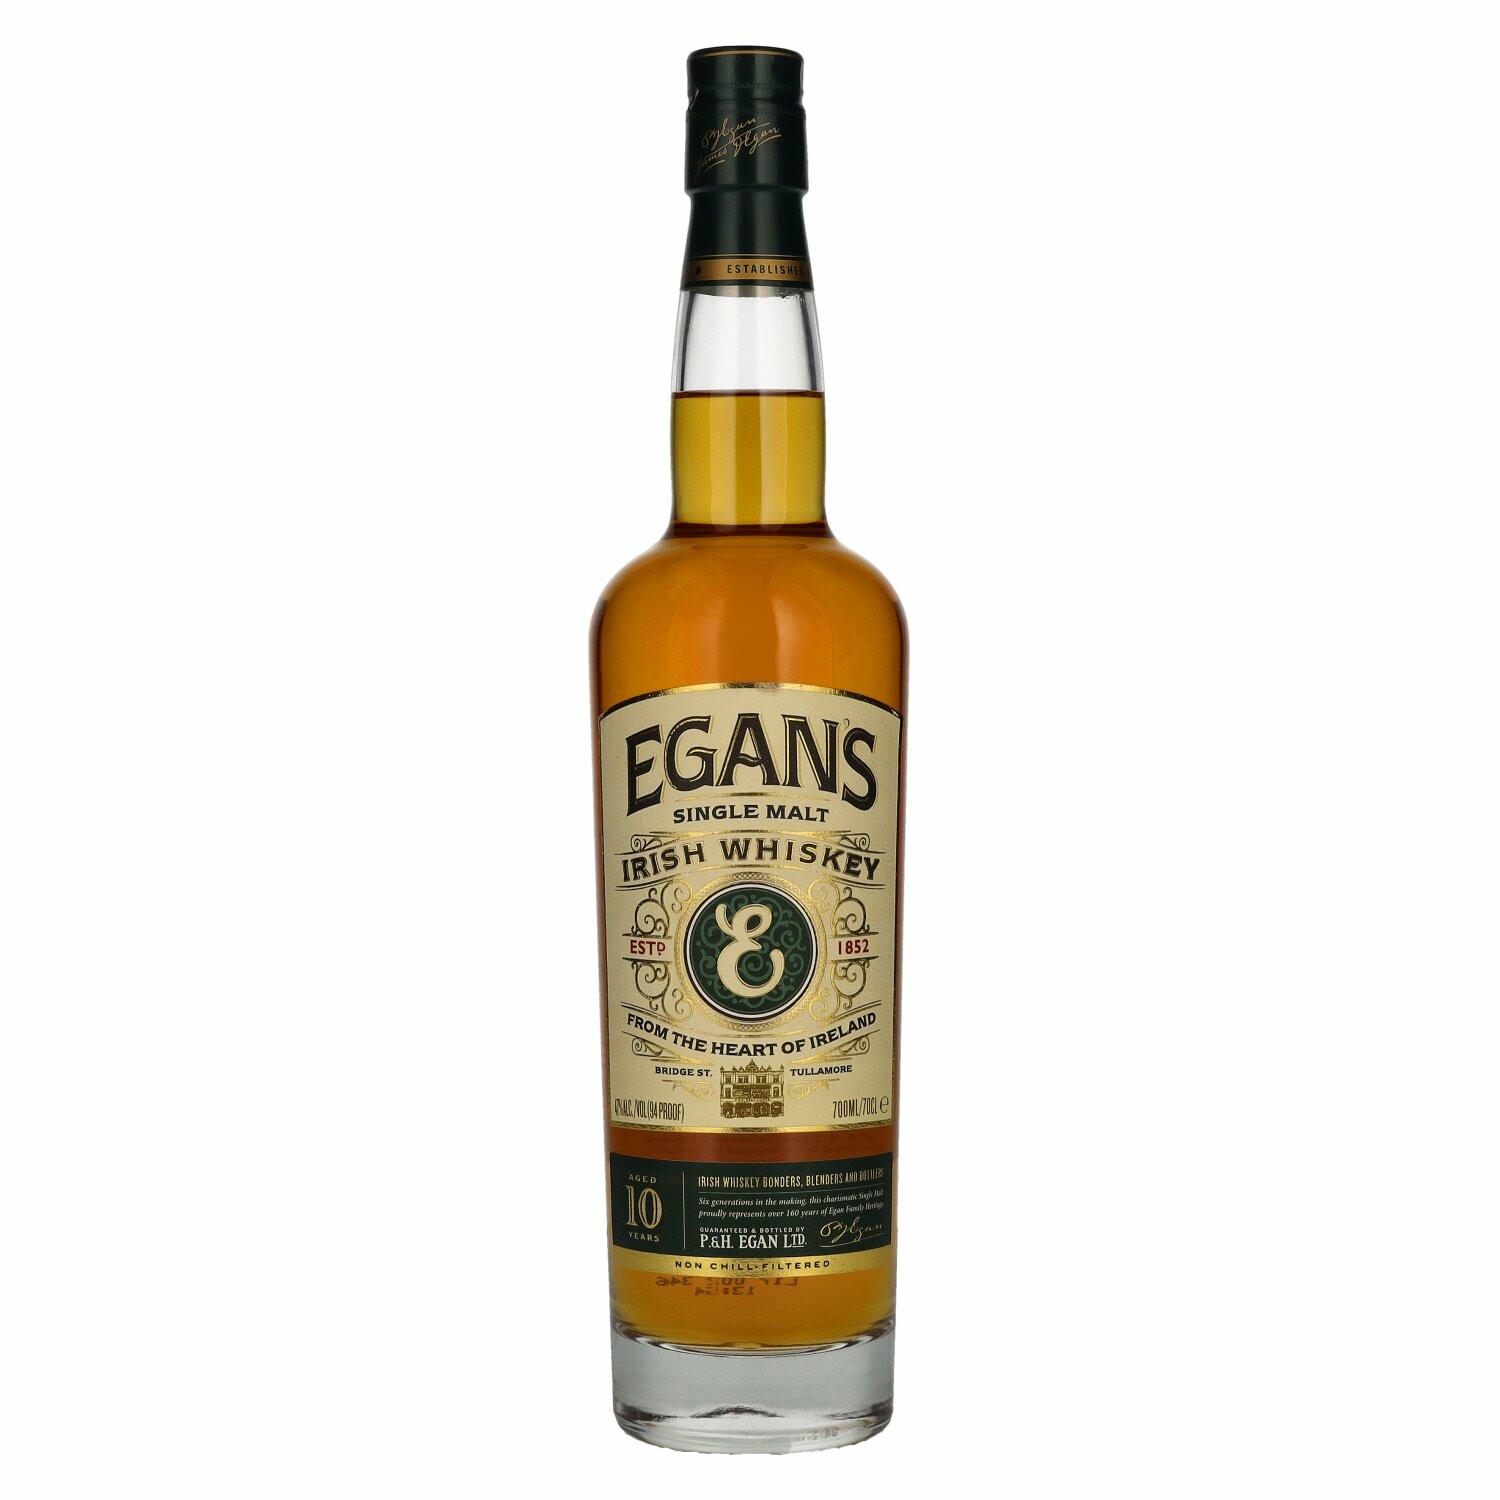 Egan's 10 Years Old Single Malt Irish Whiskey 47% Vol. 0,7l in Giftbox